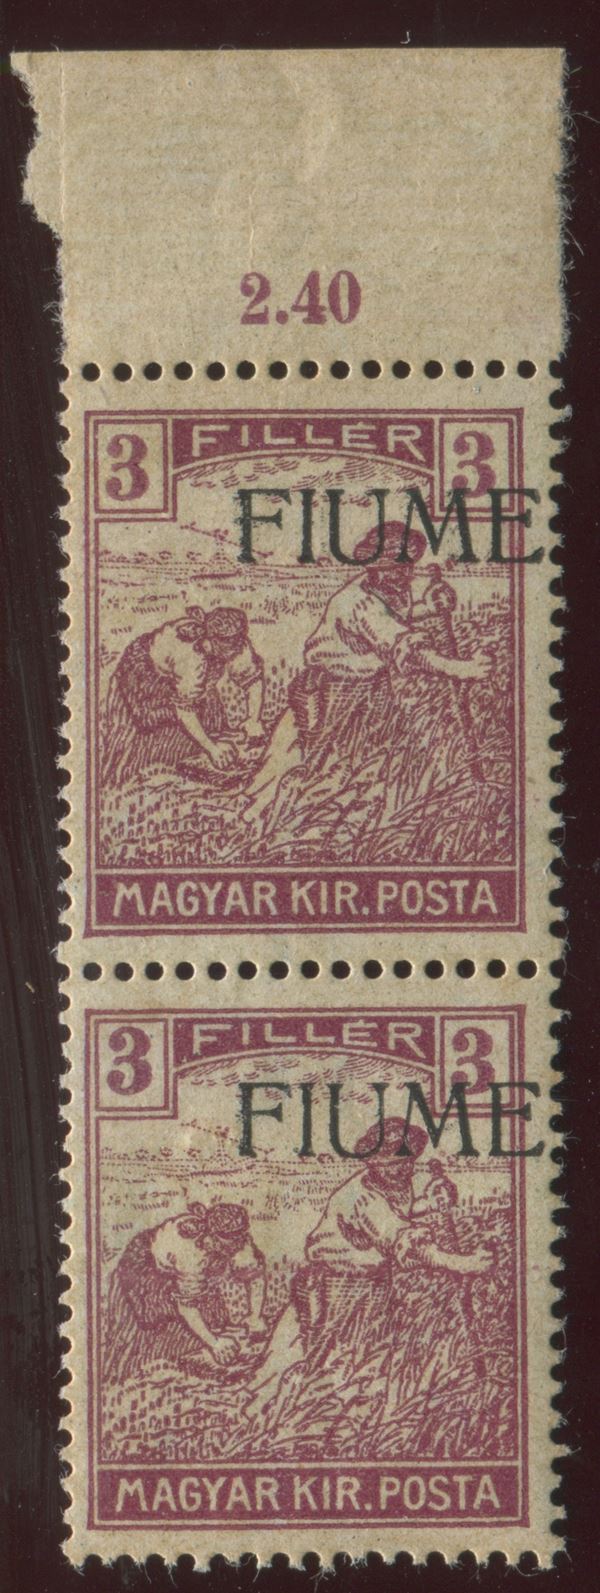 1918, Fiume, serie “Mietitori”, 3 filler lilla violetto coppia bdf, Varietà soprastampa fortemente spostata in alto a destra